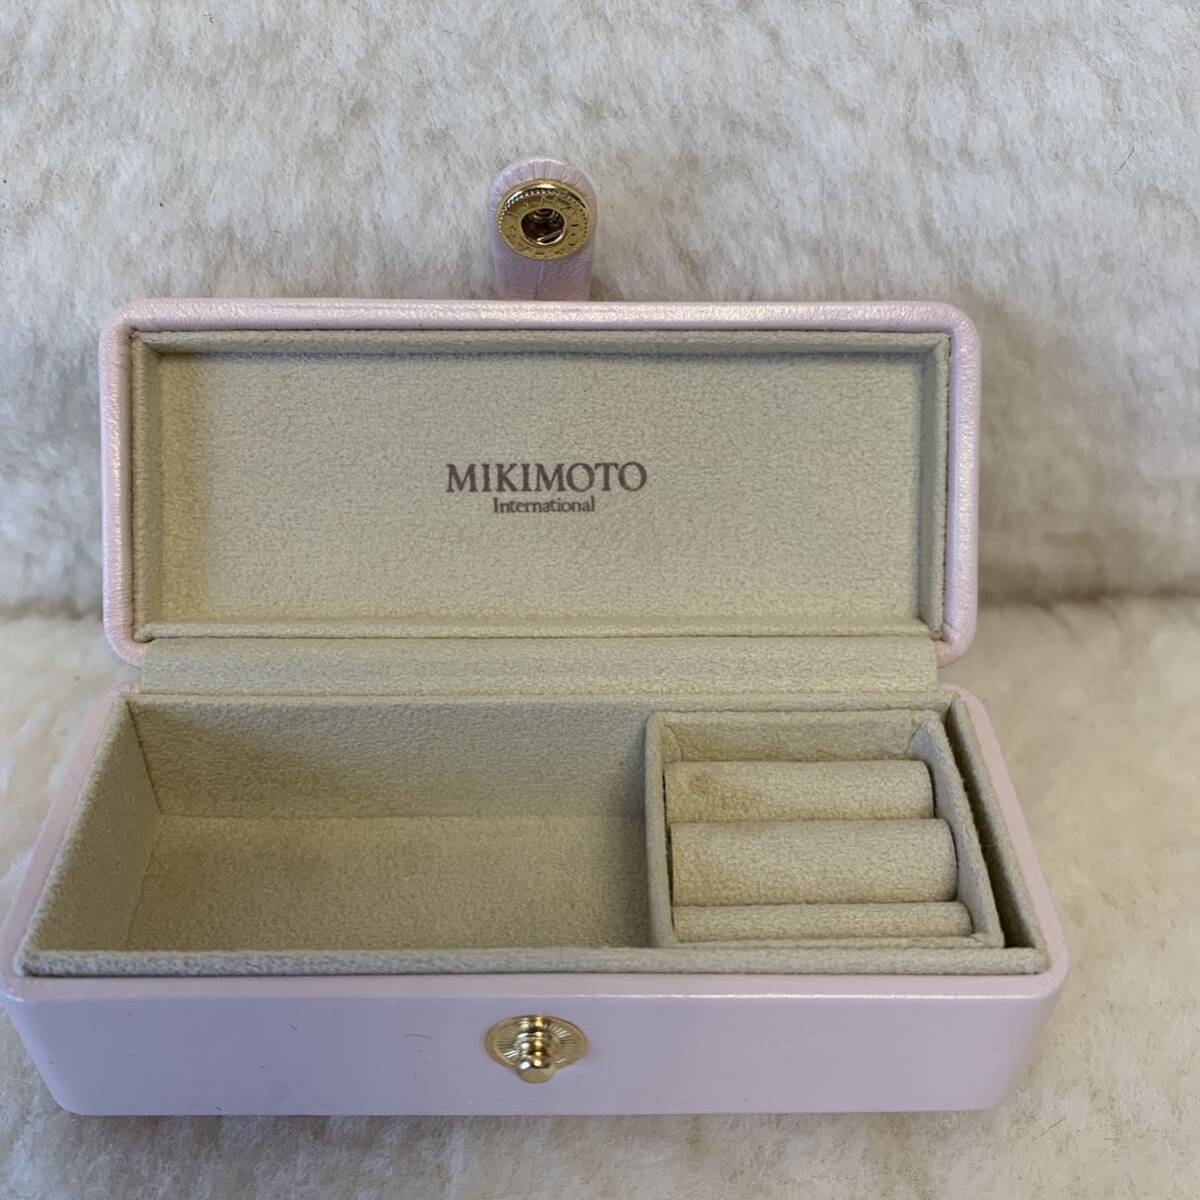 * Mikimoto MIKIMOTO ювелирные изделия кейс жемчуг имеется 